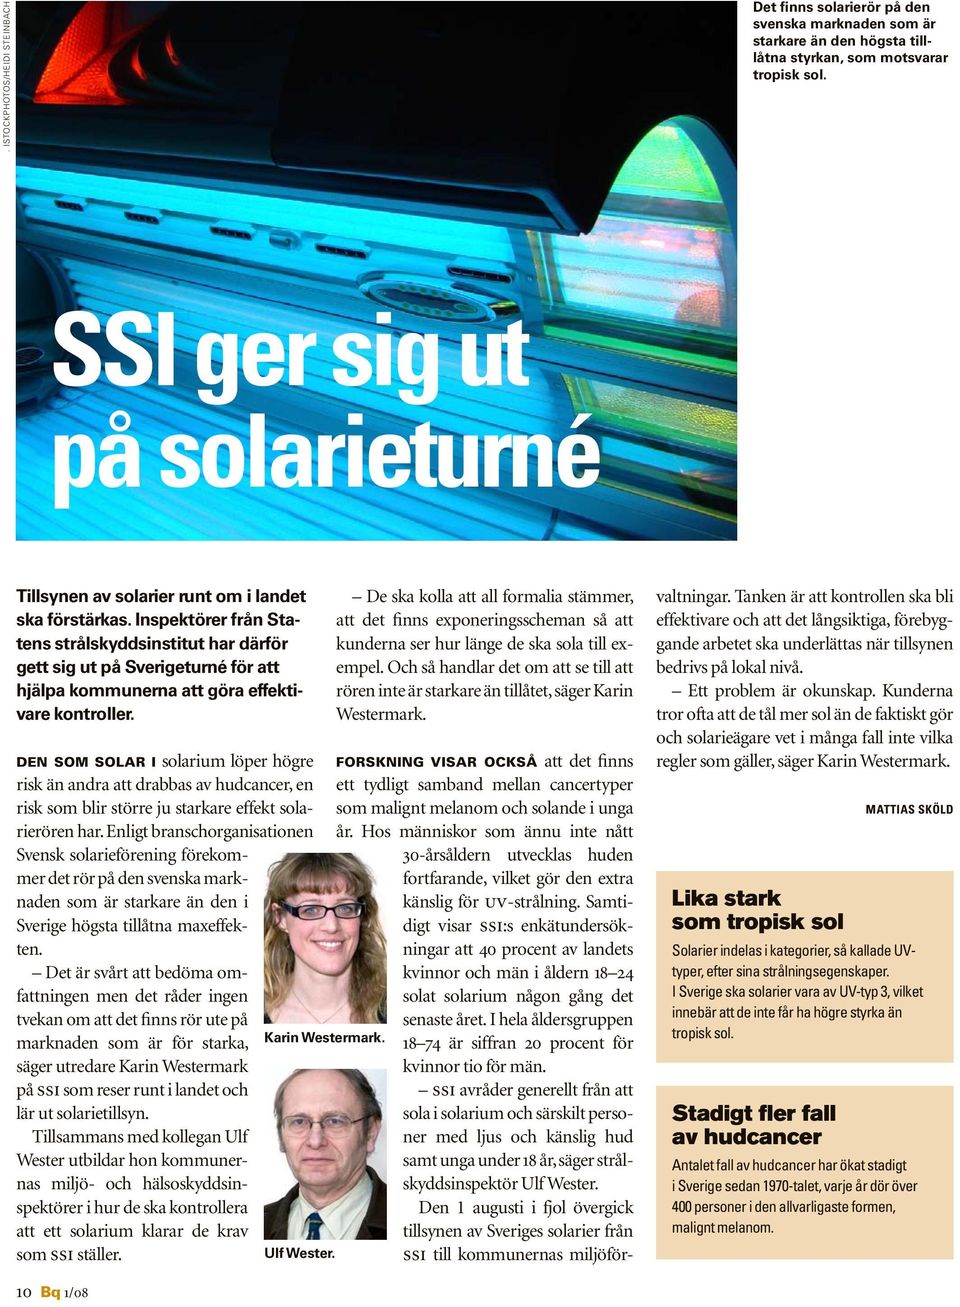 Inspektörer från Statens strålskyddsinstitut har därför gett sig ut på Sverigeturné för att hjälpa kommunerna att göra effektivare kontroller.